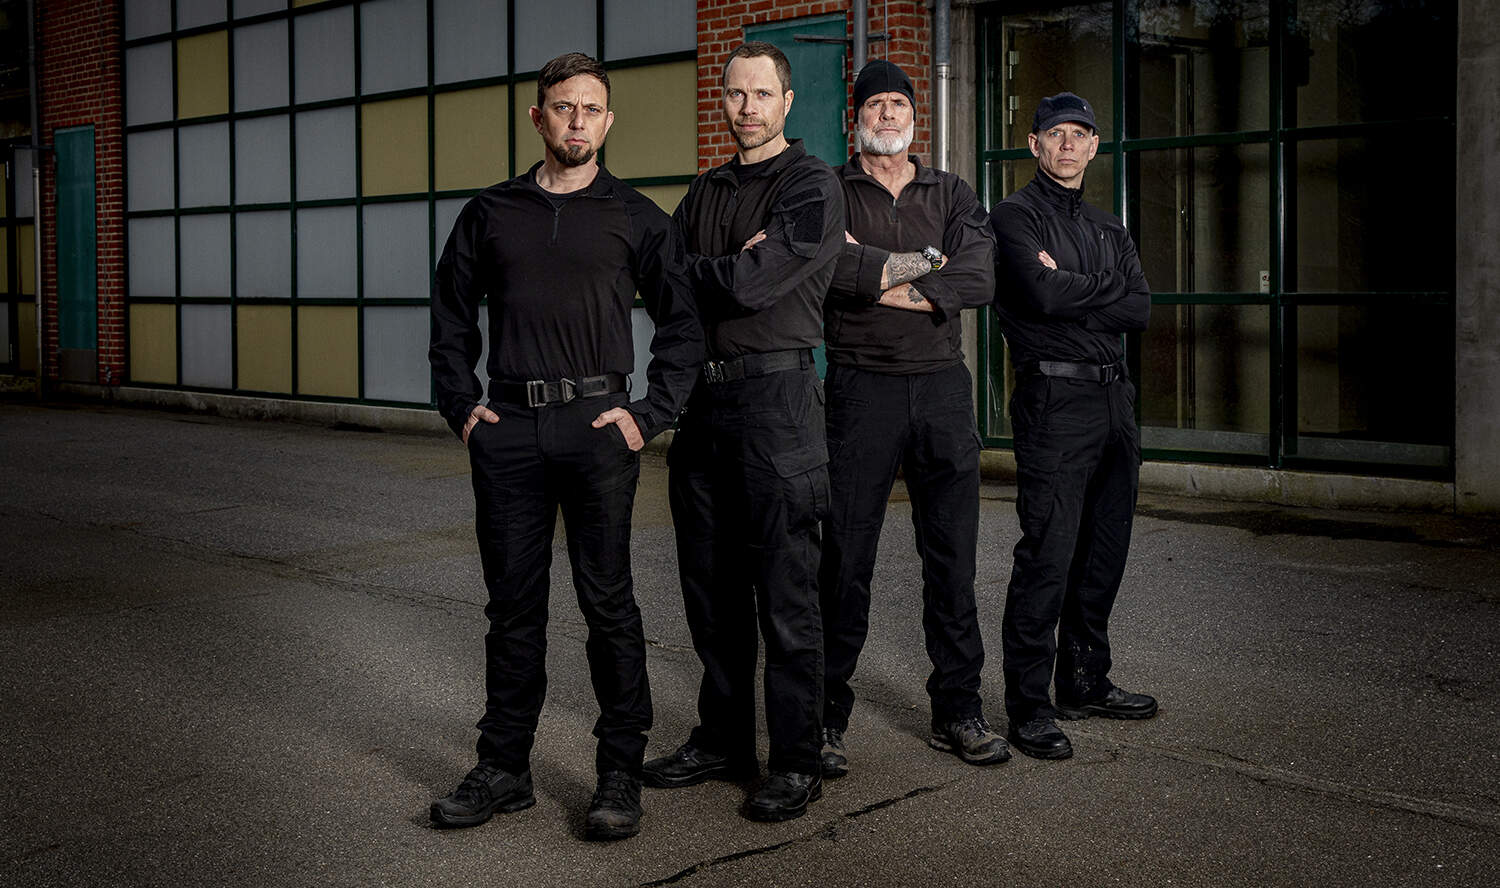 Instruktørerne samlet, Korpset, sæson 6, med Erik B. Jørgensen, Foto Lars E. Andreasen, TV 2